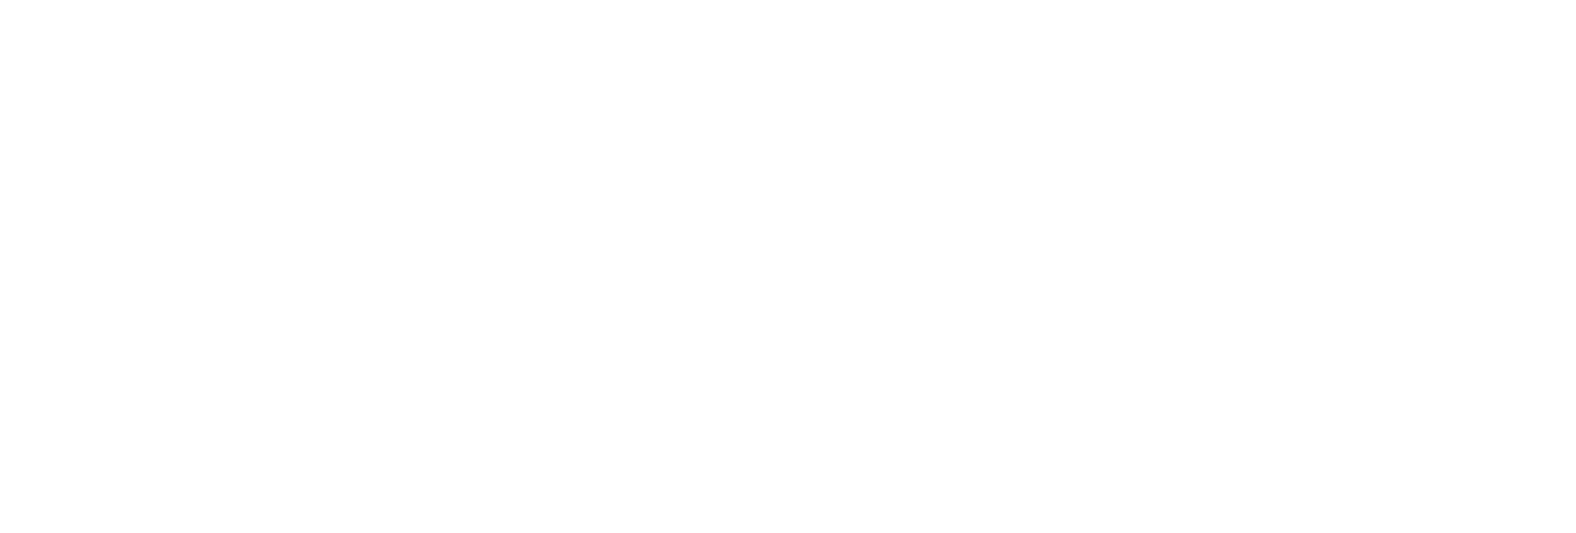 FinWise Bancorp Logo groß für dunkle Hintergründe (transparentes PNG)